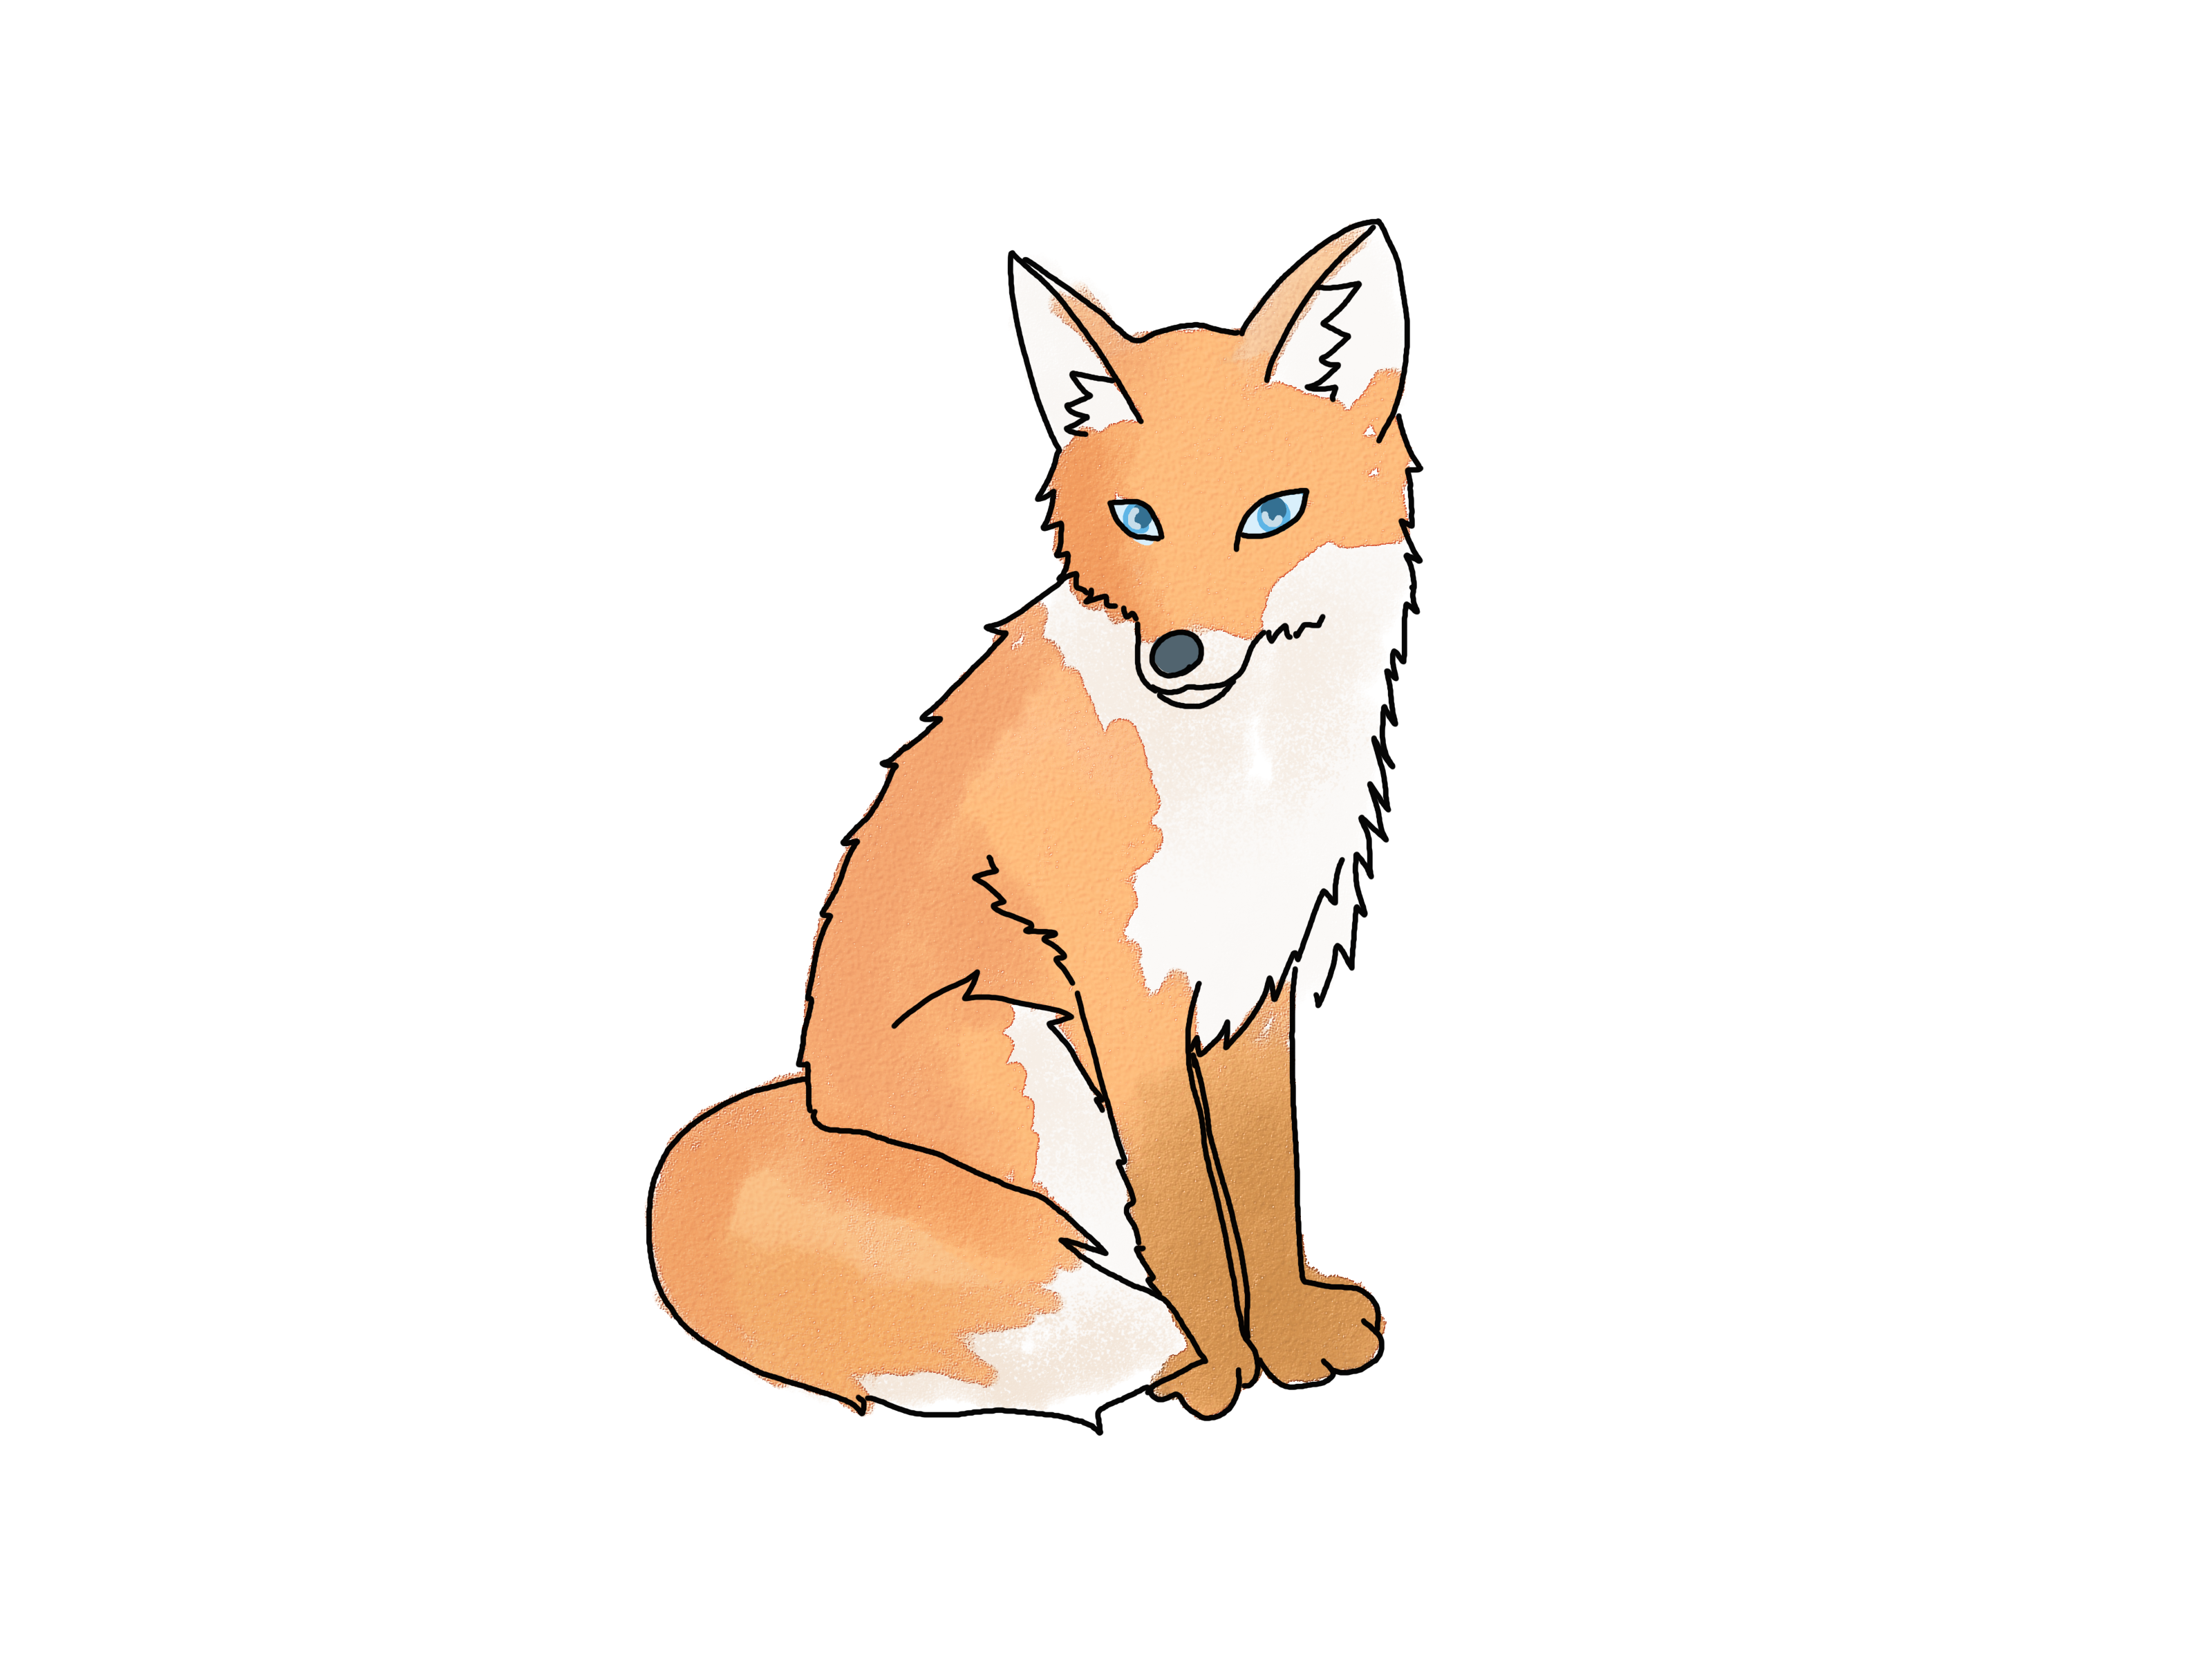 4 Ways to Draw a Fox - wikiHow